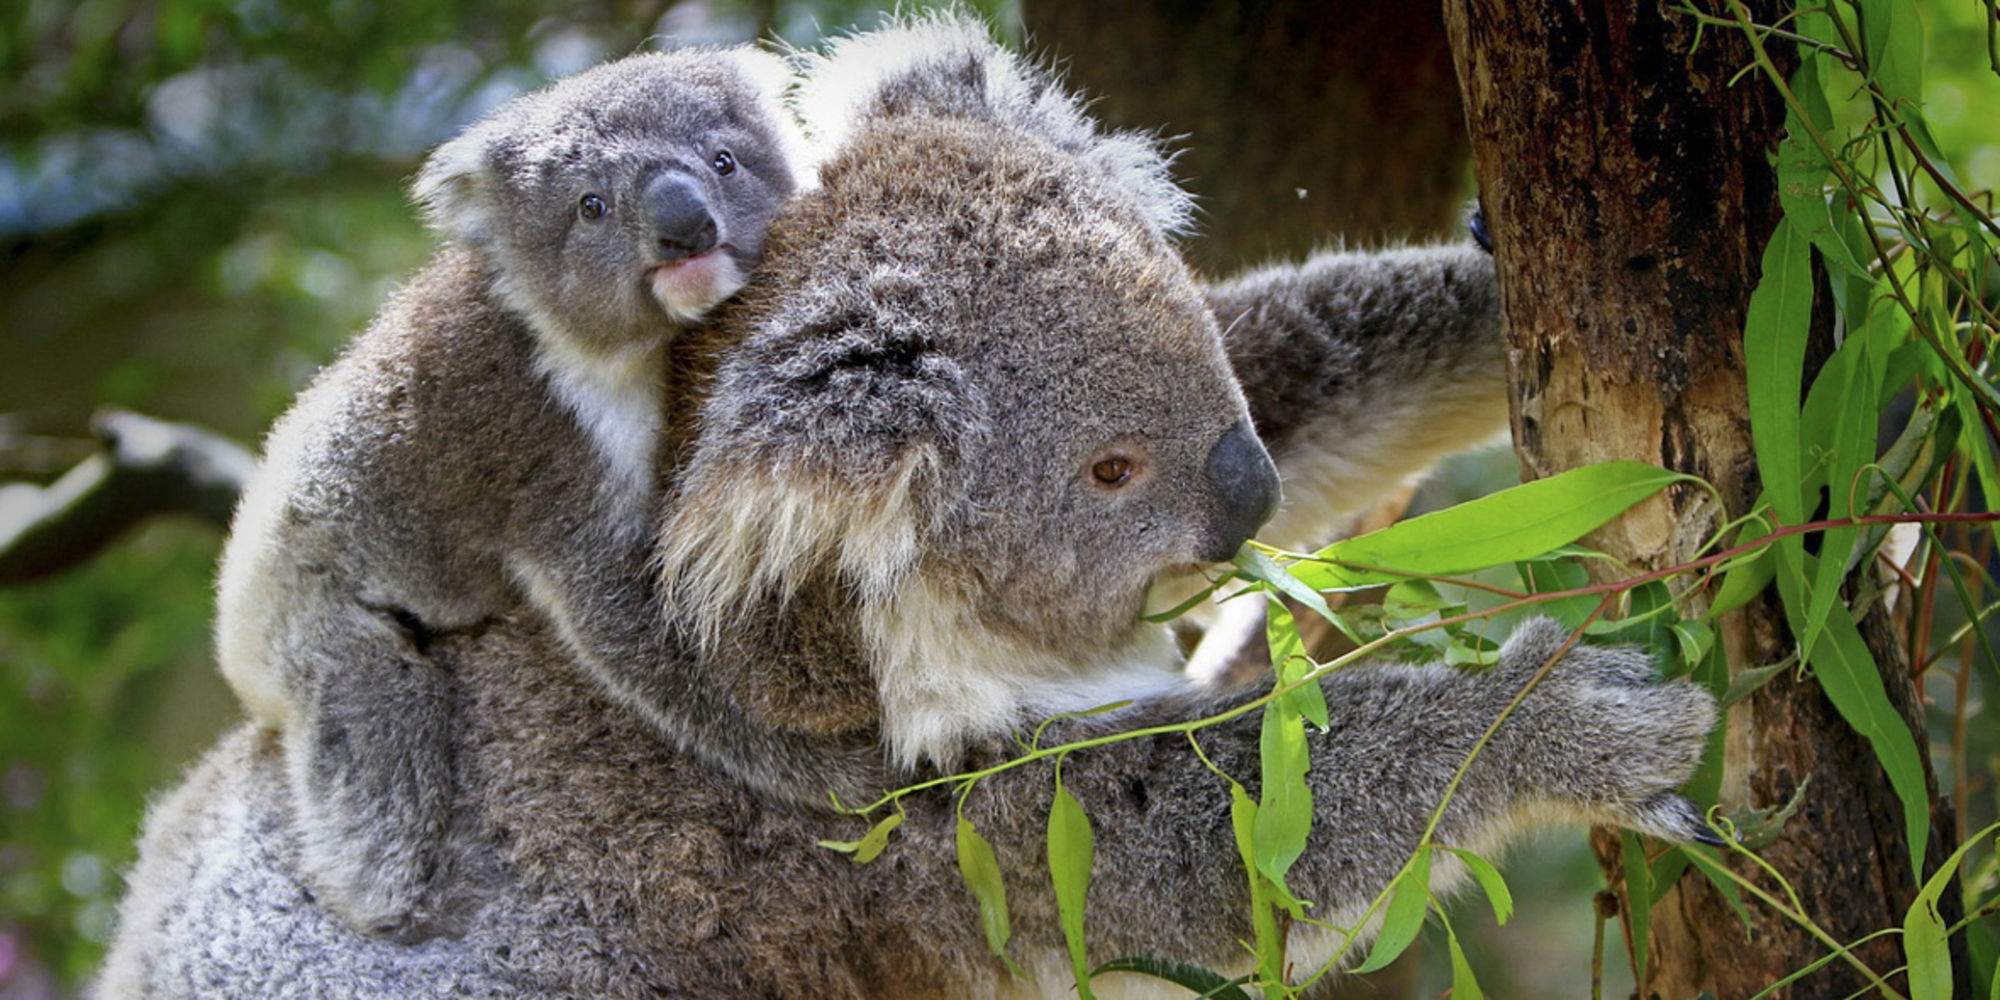 Tier- und Naturschutz haben bei den meisten Freiwilligenarbeits-Programmen in Australien höchste Priorität!